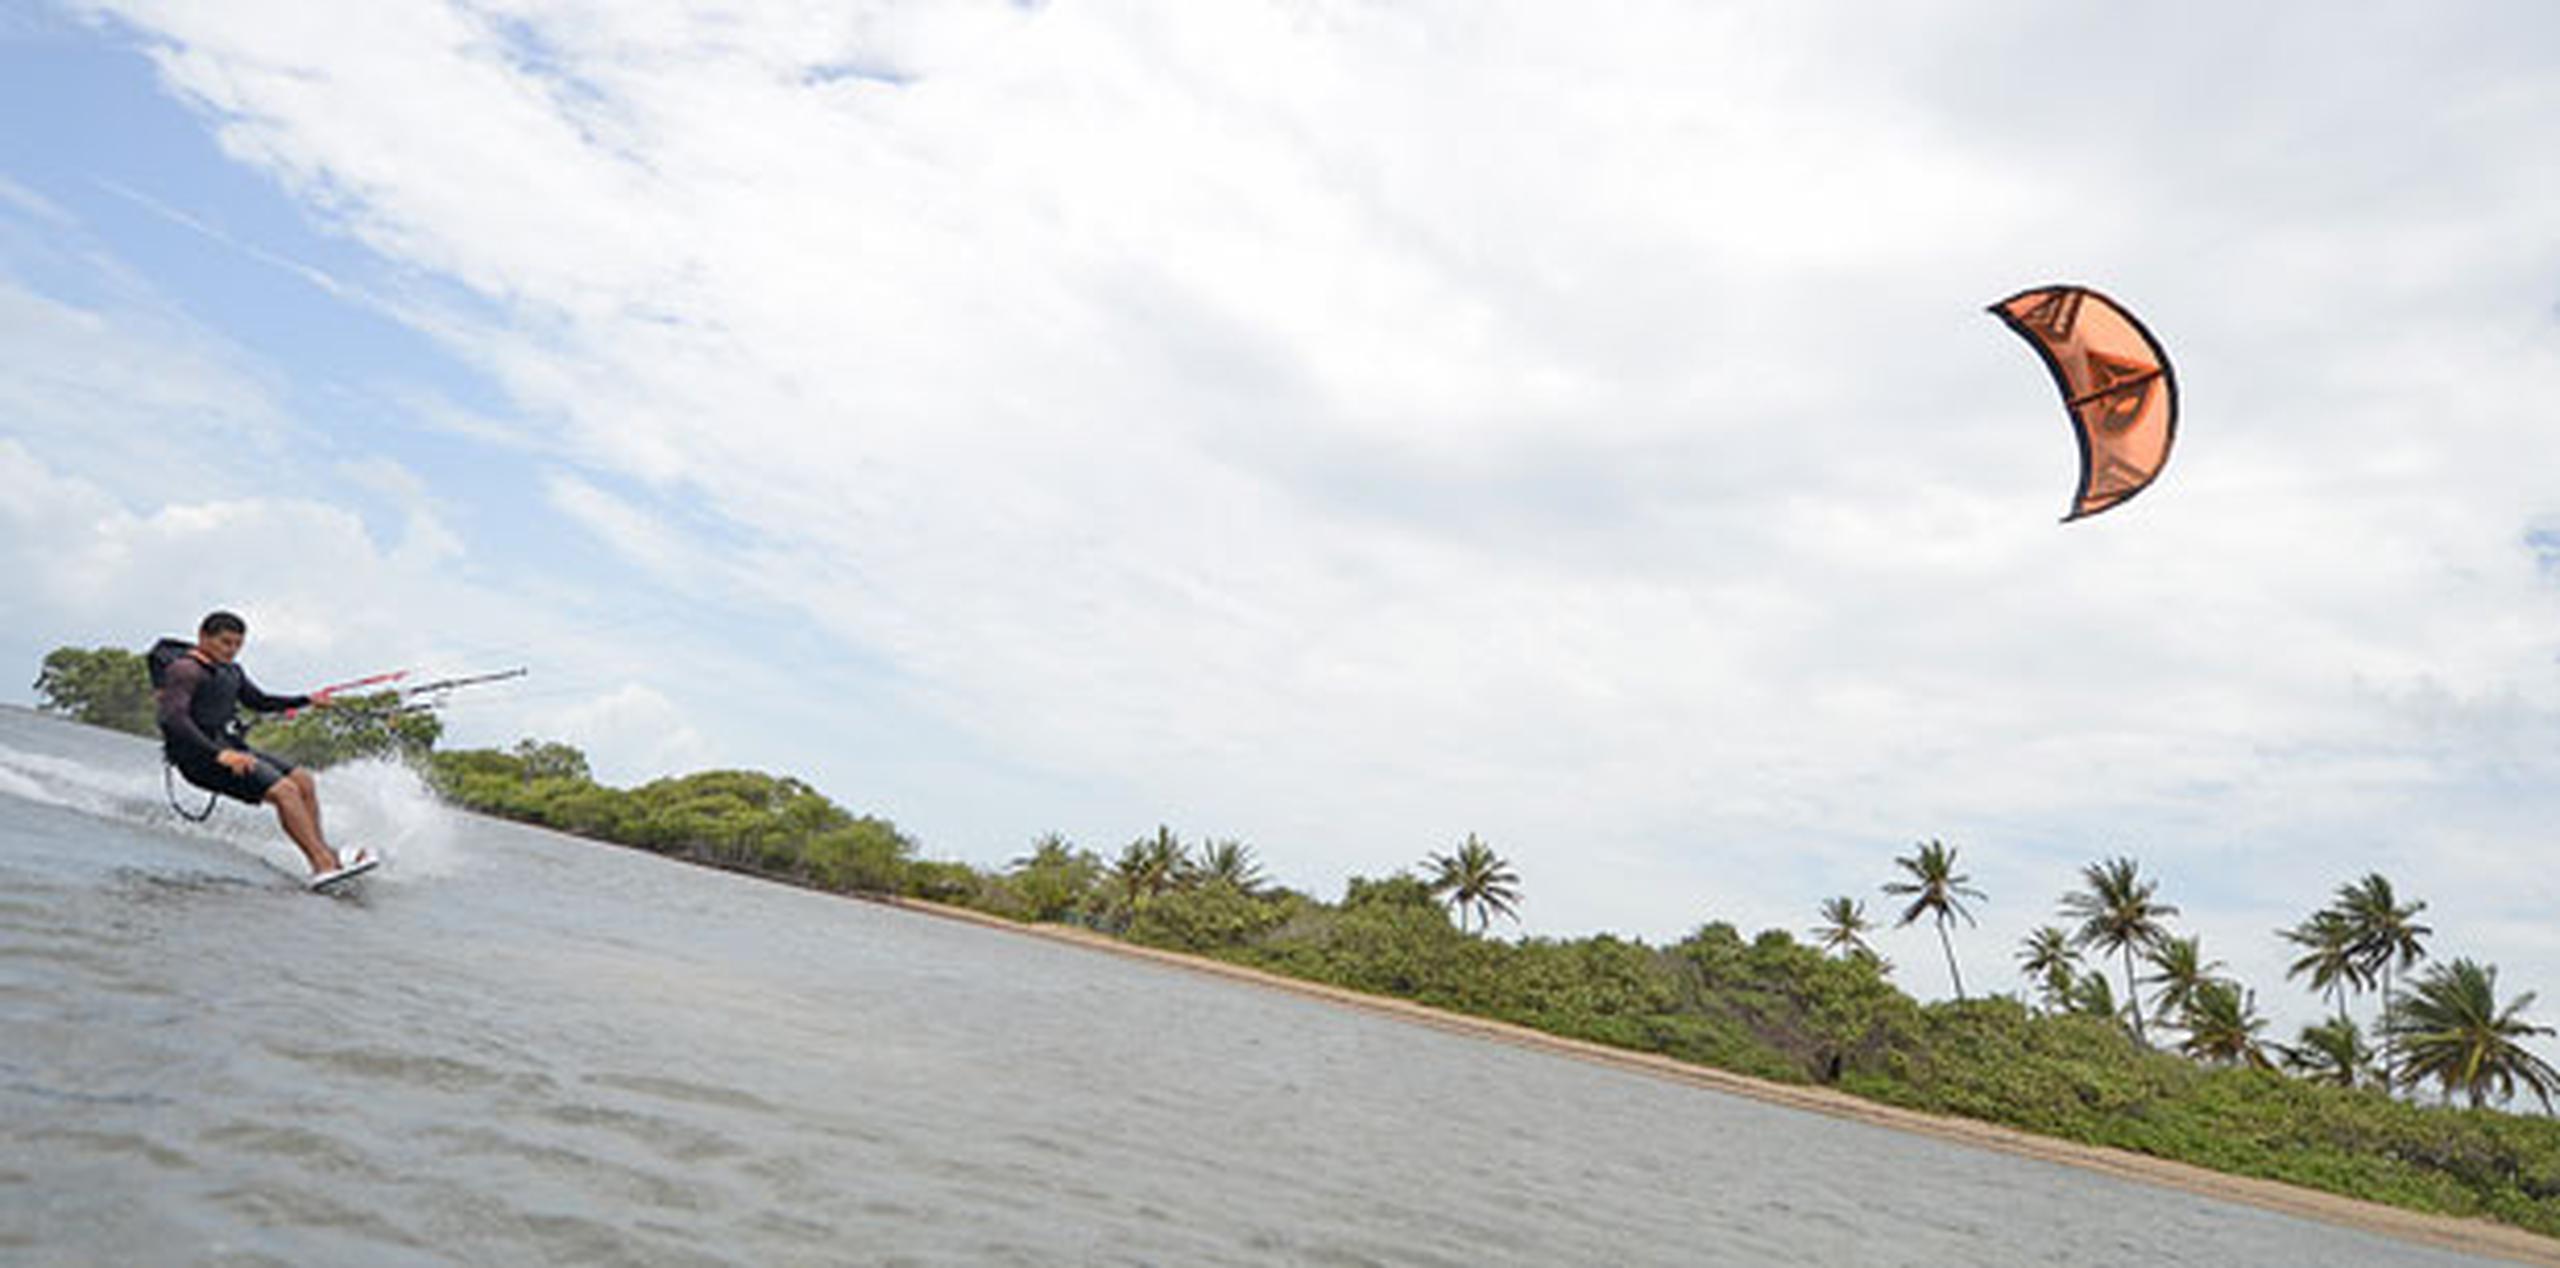 Aparte de la playa Los Bohíos en Guayama, Kelvin Gernández destaca las de Isla Verde, Ocean Park, Dorado e Isabela como las idóneas para practicar el kite surfing. (luis.alcaladelolmo@gfrmedia.com)